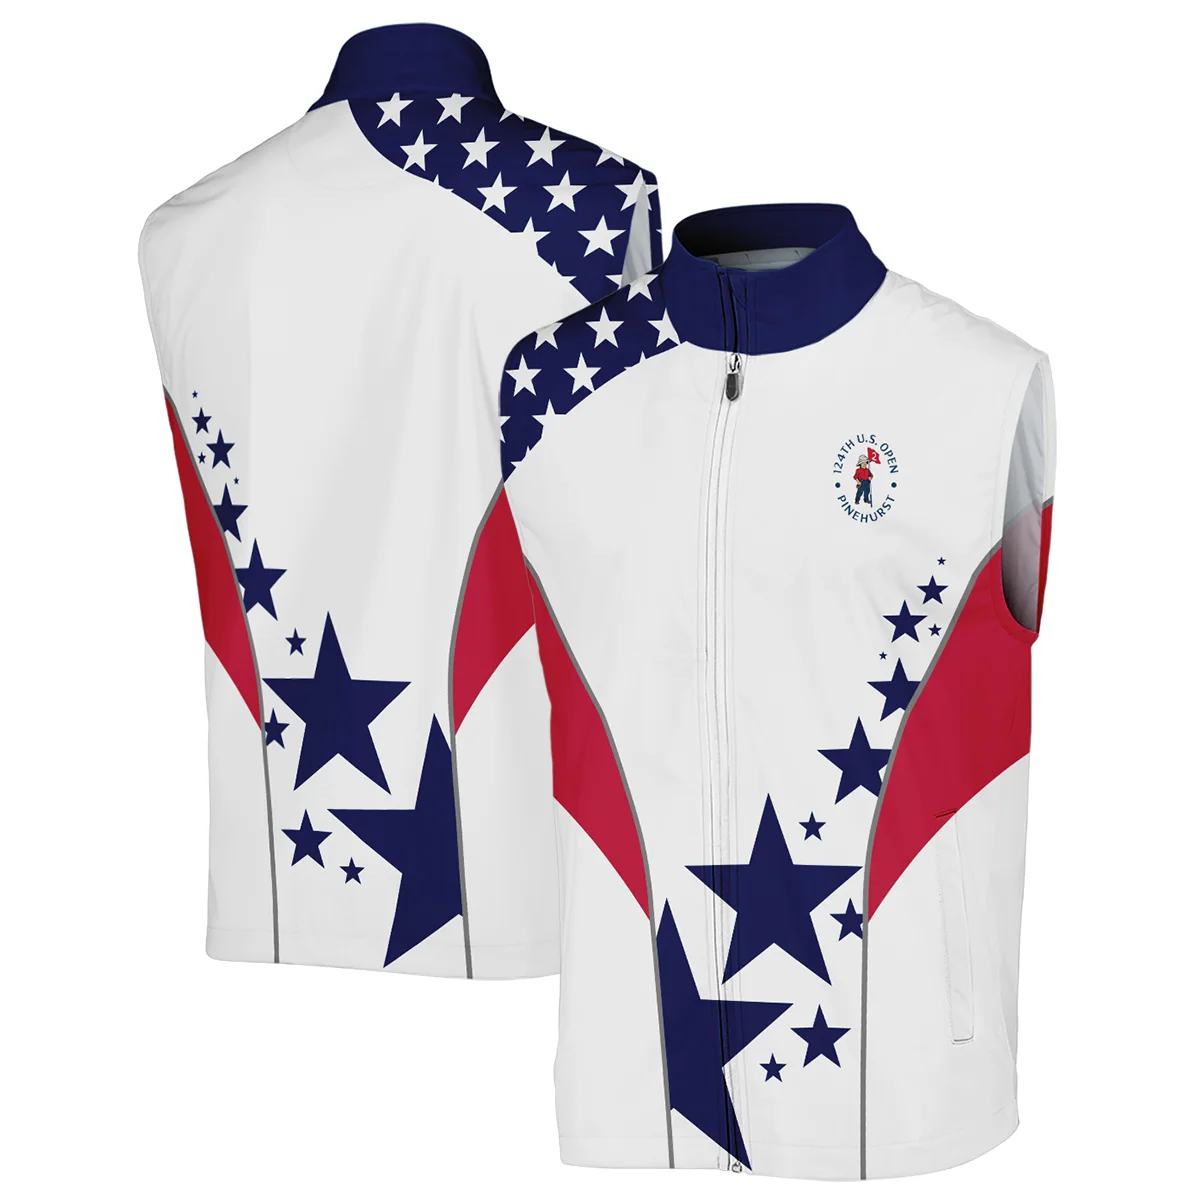 124th U.S. Open Pinehurst Callaway Stars US Flag White Blue Sleeveless Jacket Style Classic Sleeveless Jacket